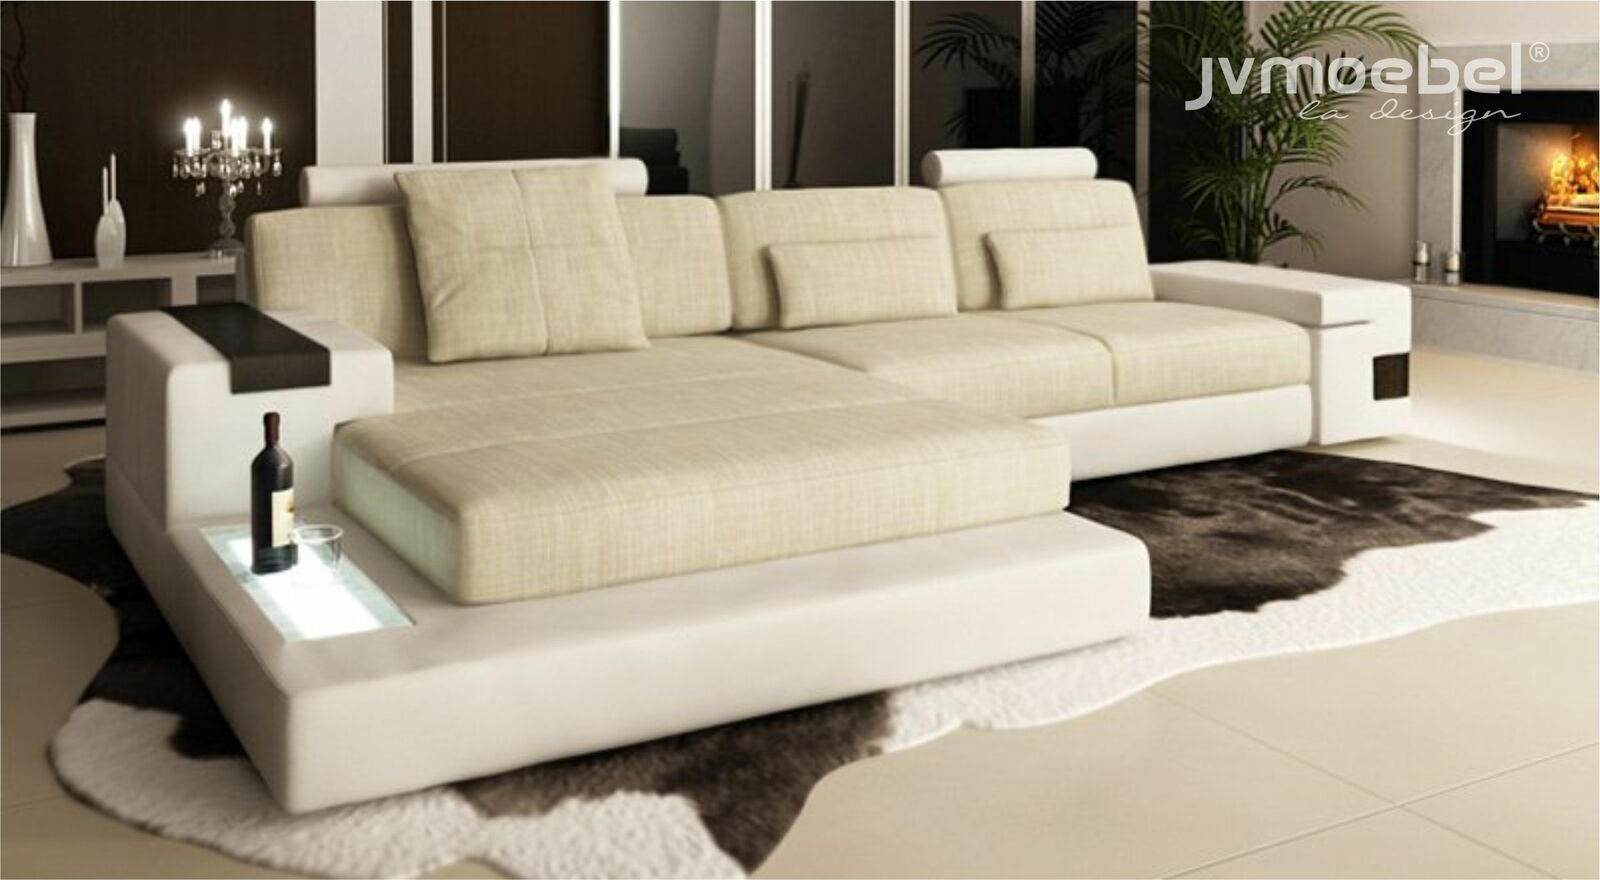 Bettfunktion Ecksofa, Couchen Couch Leder Sofa Schlaf L-form Sofas JVmoebel Textil